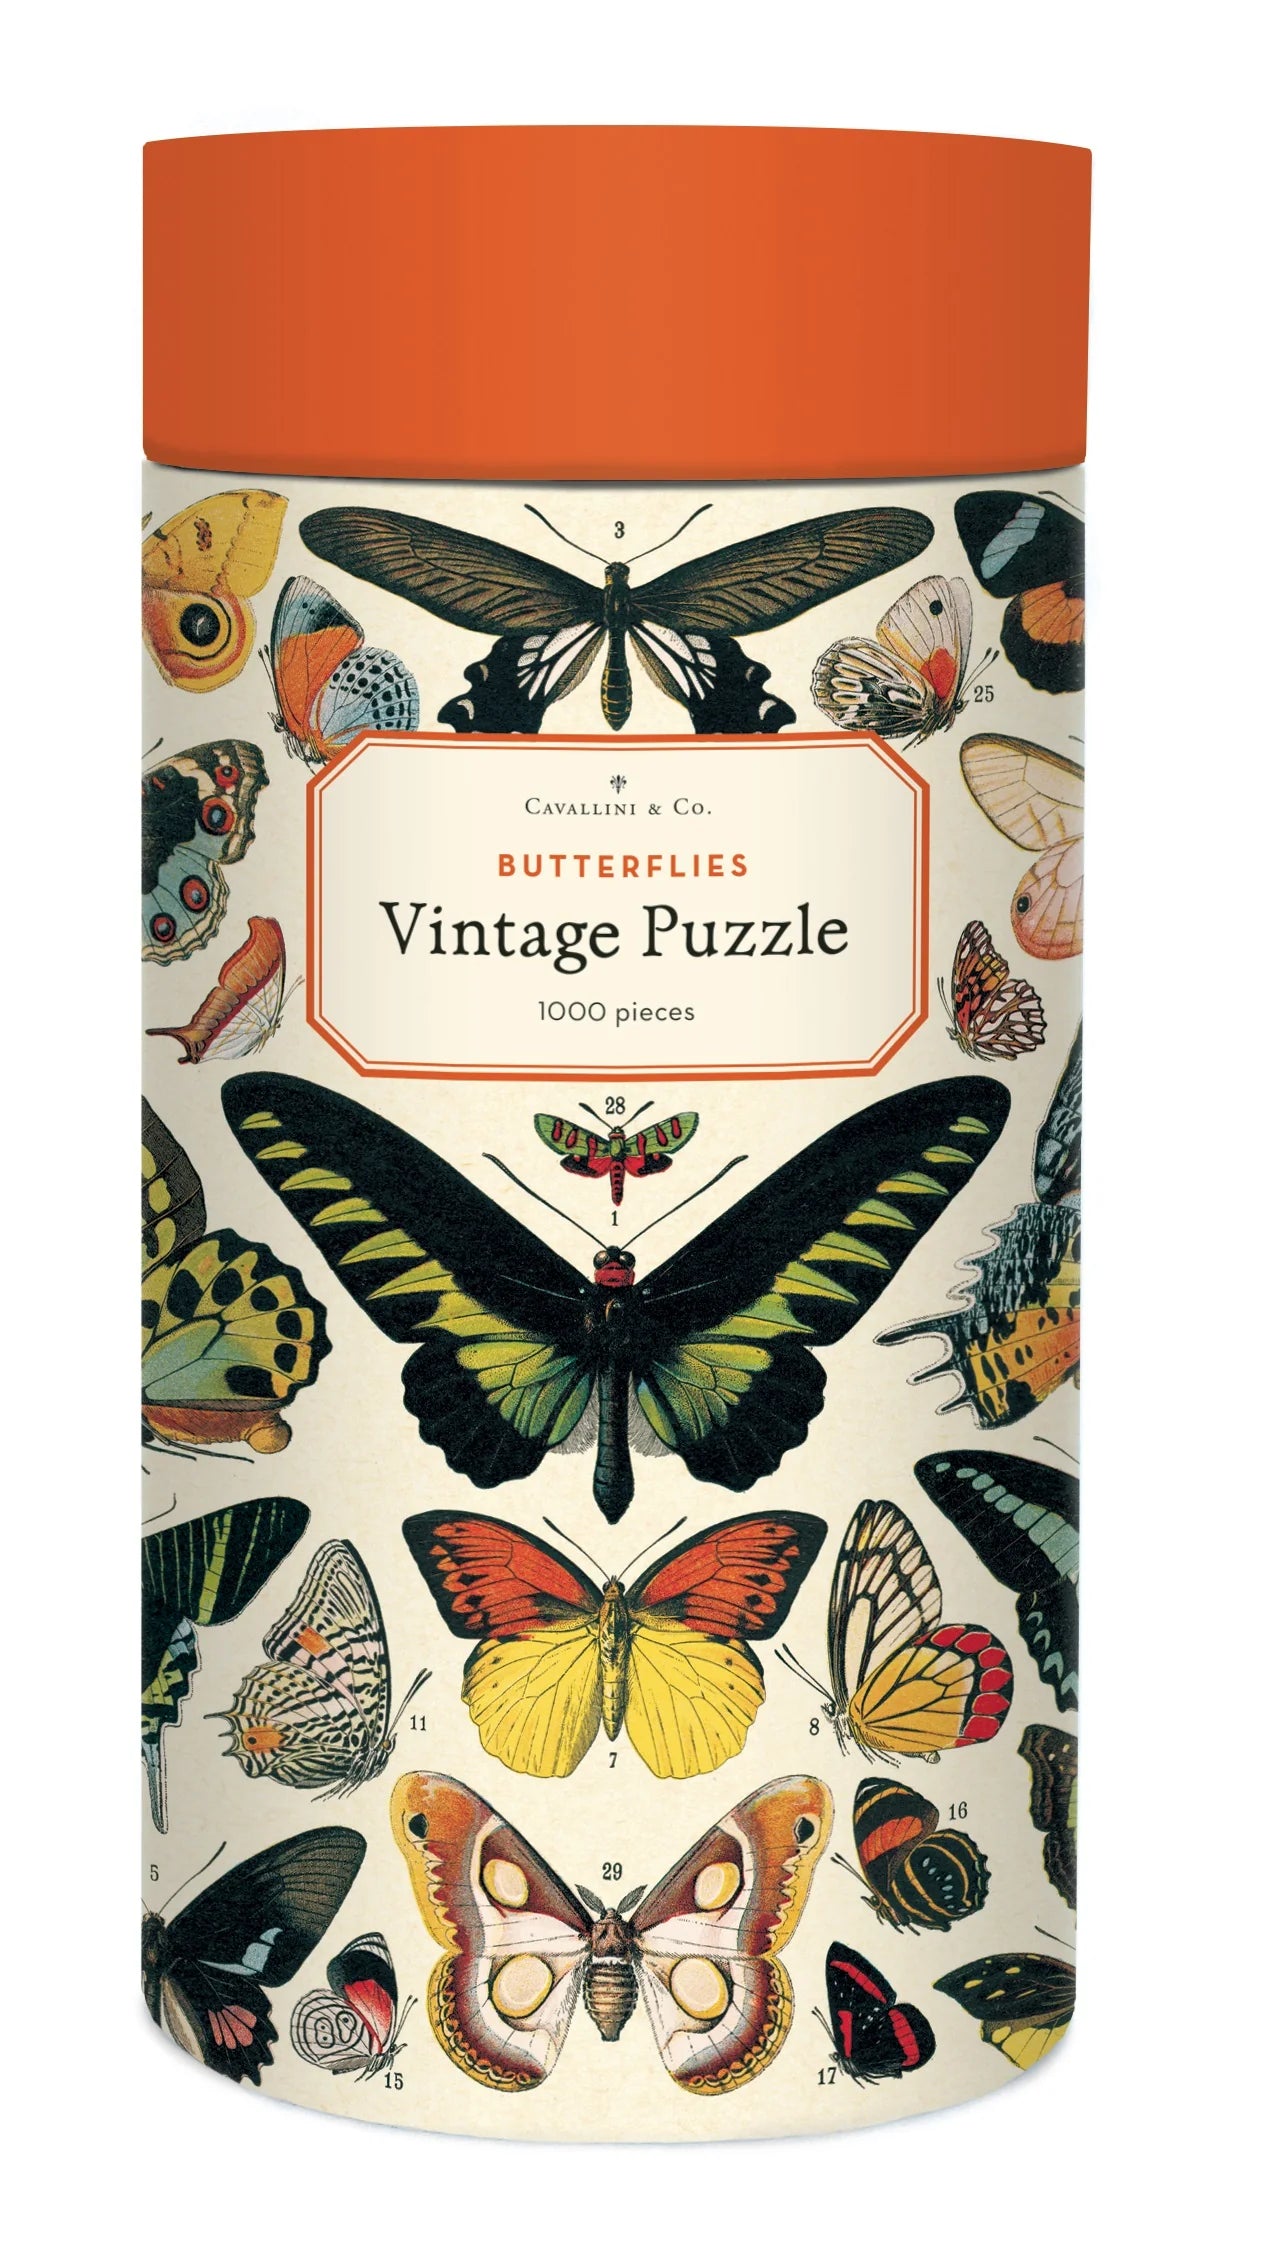 Cavallini & Co Butterflies 1000 Piece Vintage Puzzle